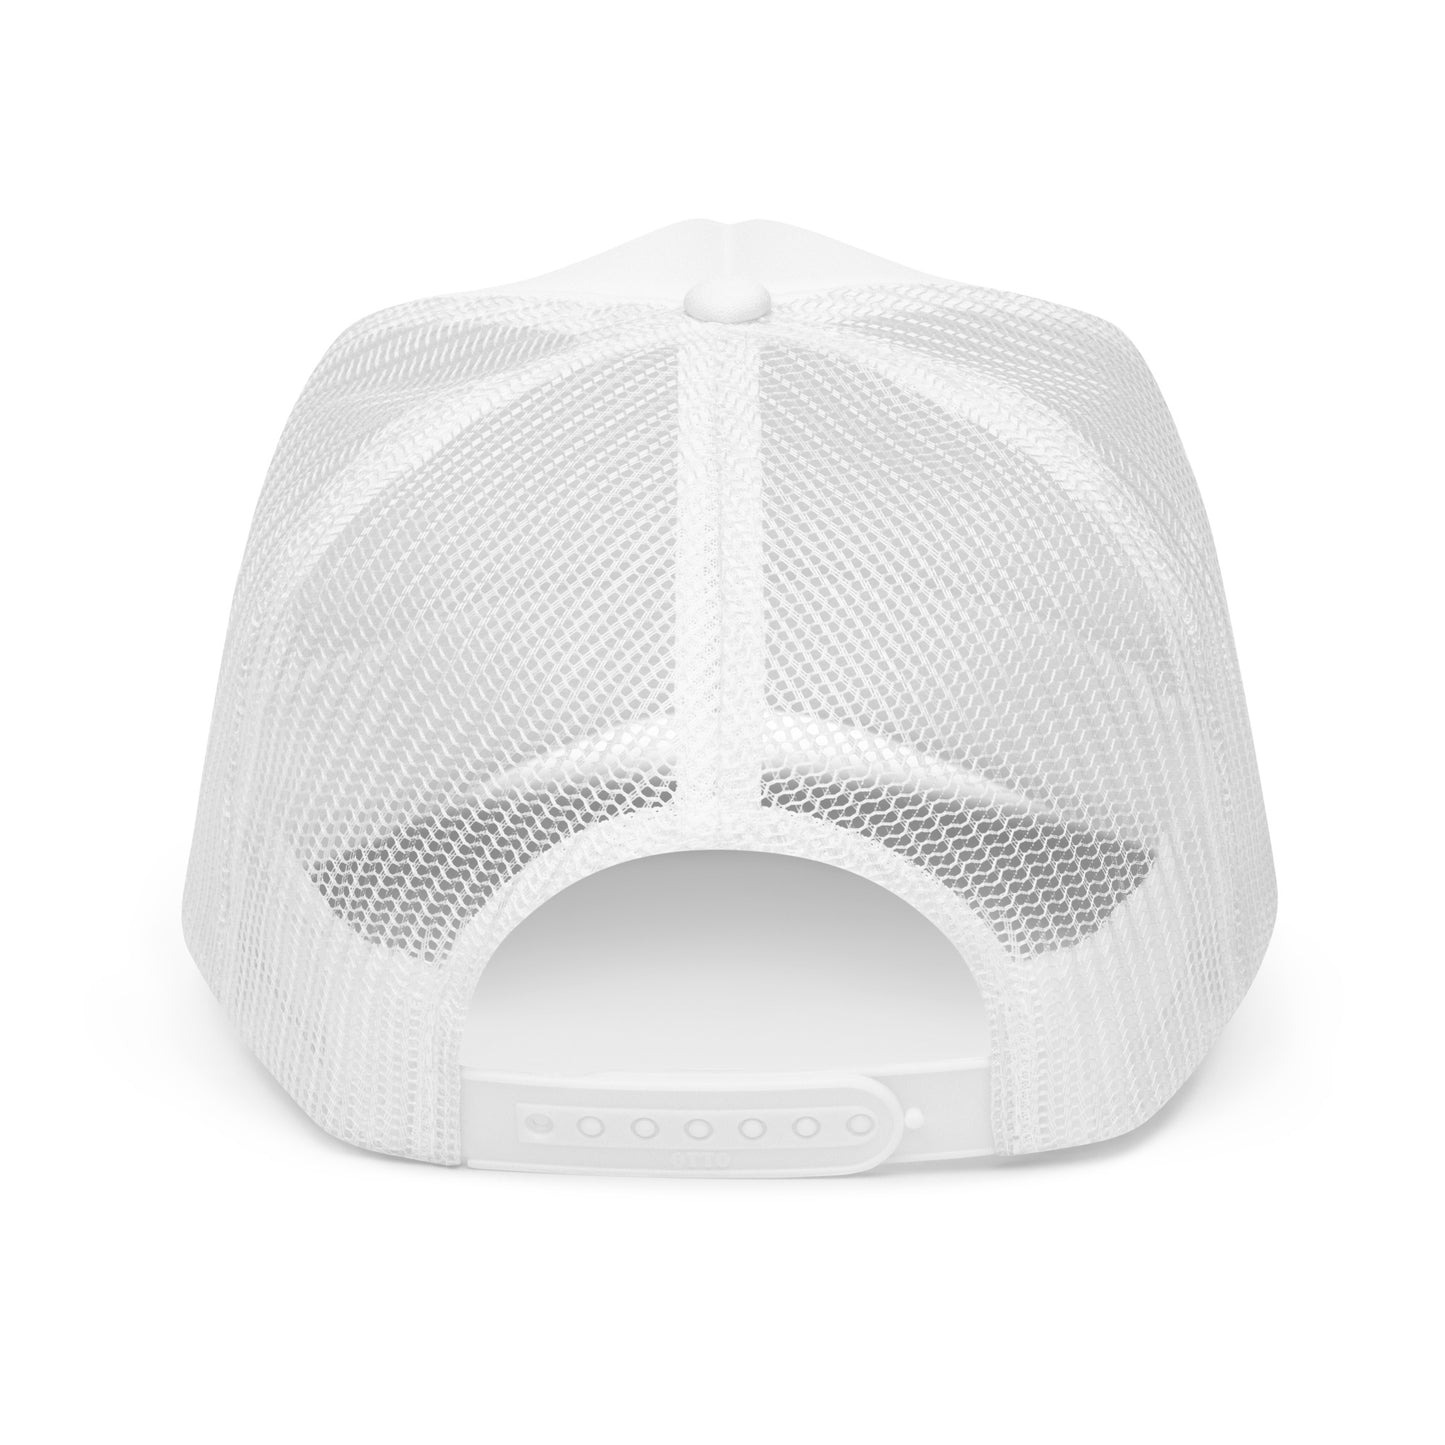 SNS - Foam trucker hat (White)